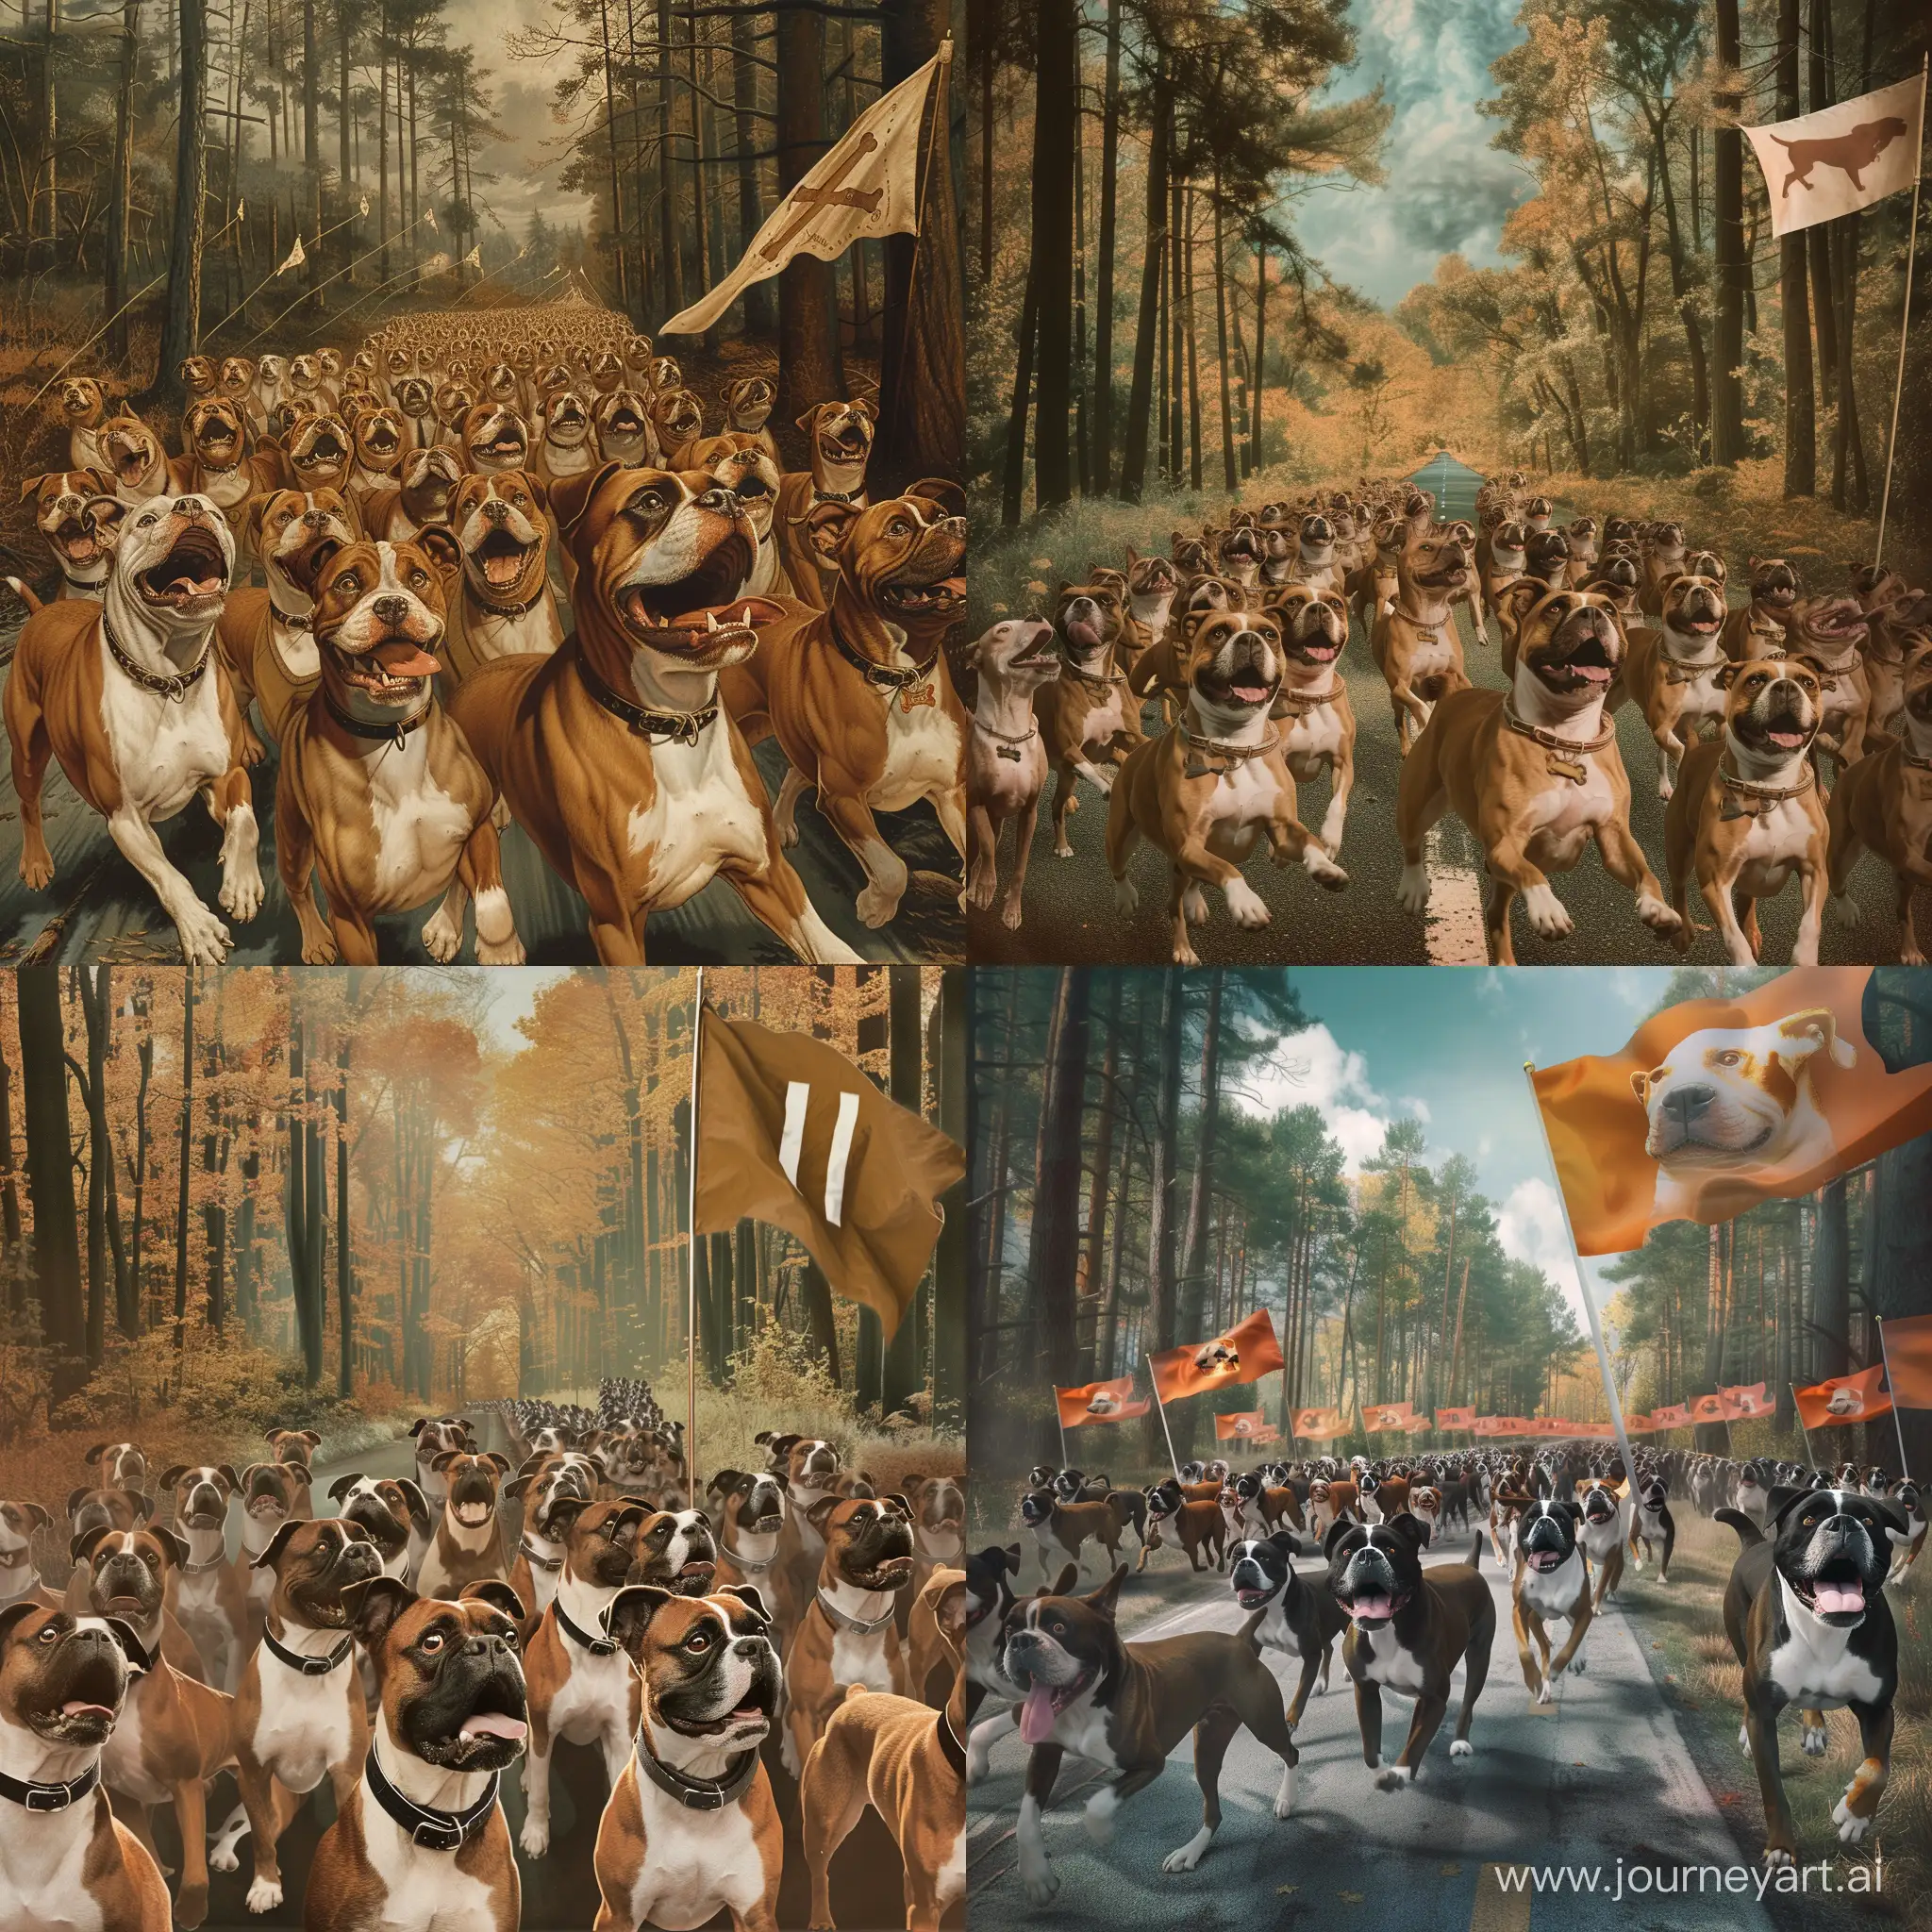 Joyful-Boxerdog-Parade-through-Woodland-Path-with-Flag